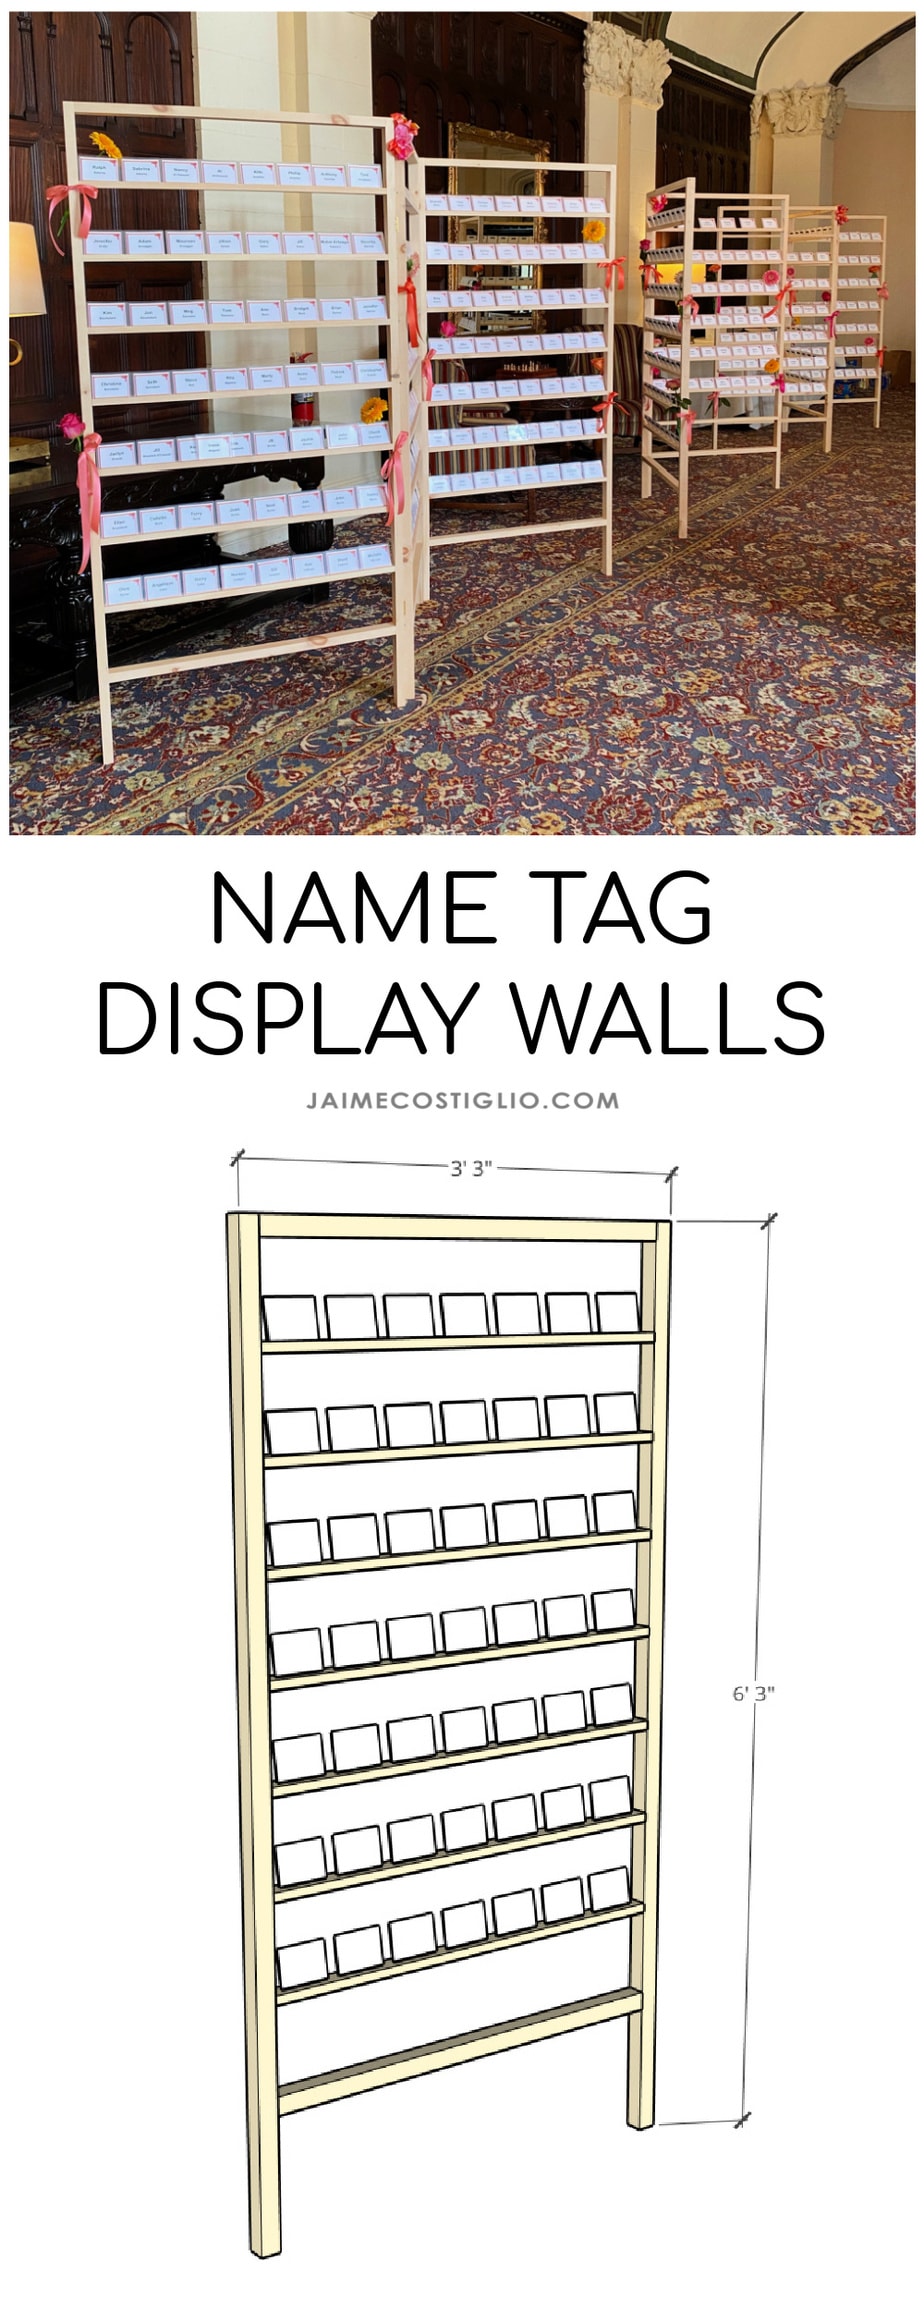 die name tag display walls